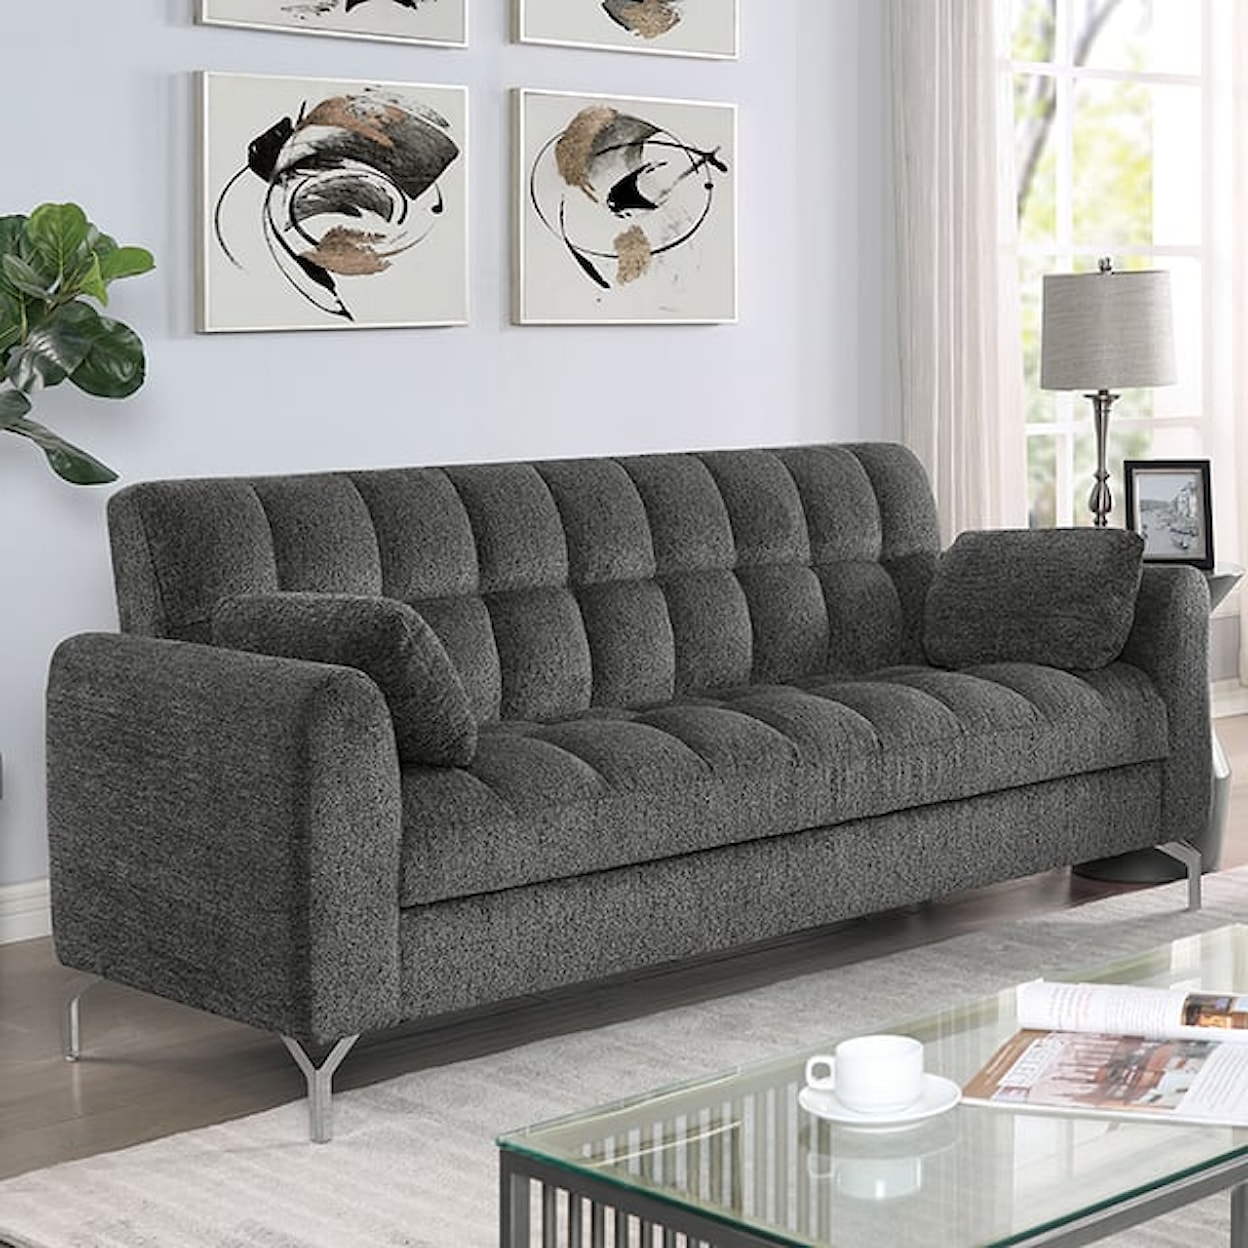 Furniture of America Lupin Sofa